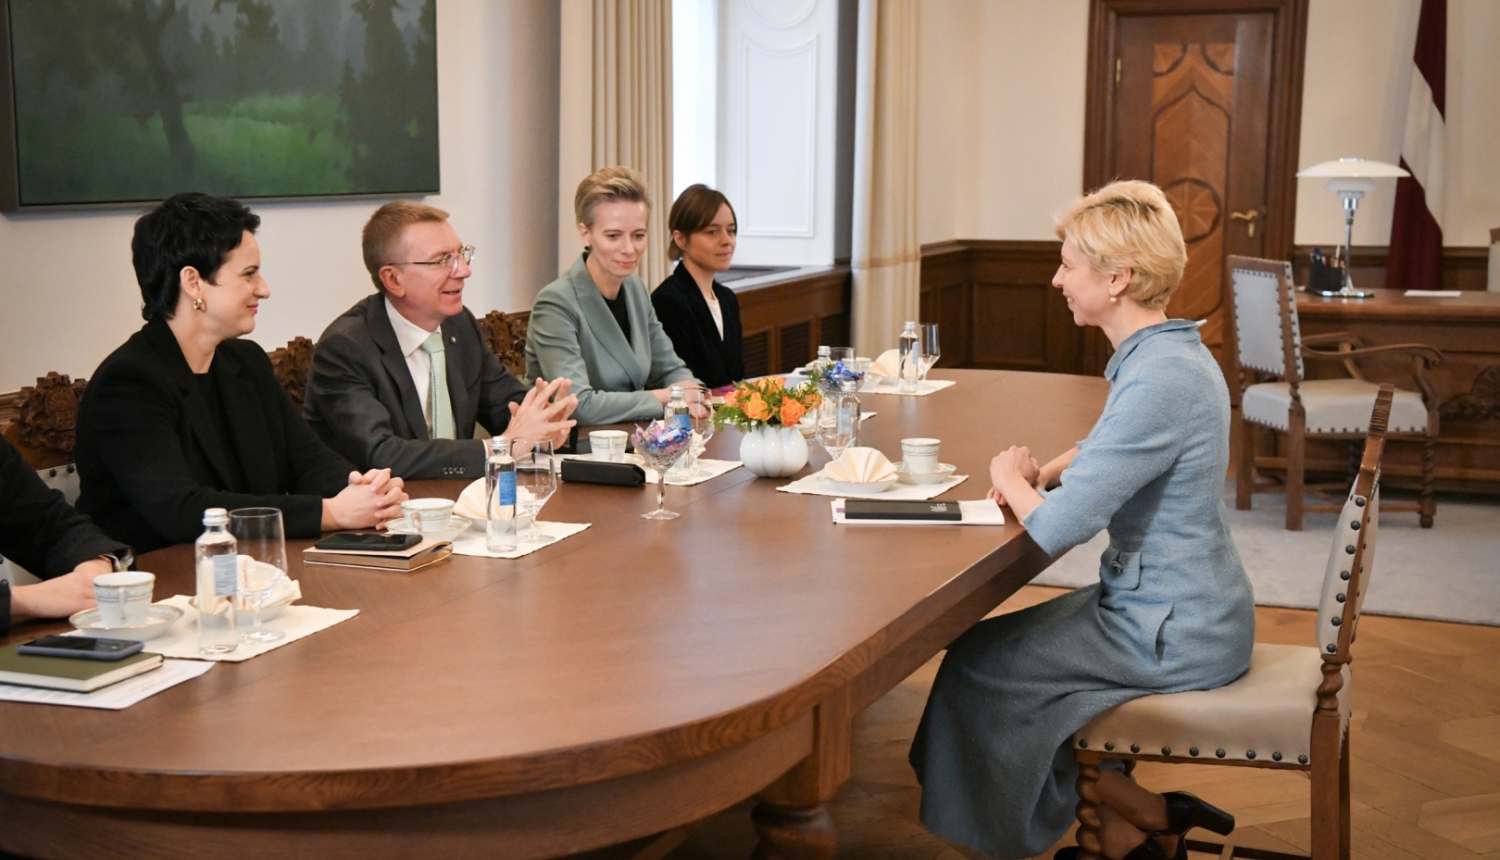 Sarunas dalībnieki ar galdu Valsts prezidenta kabinetā